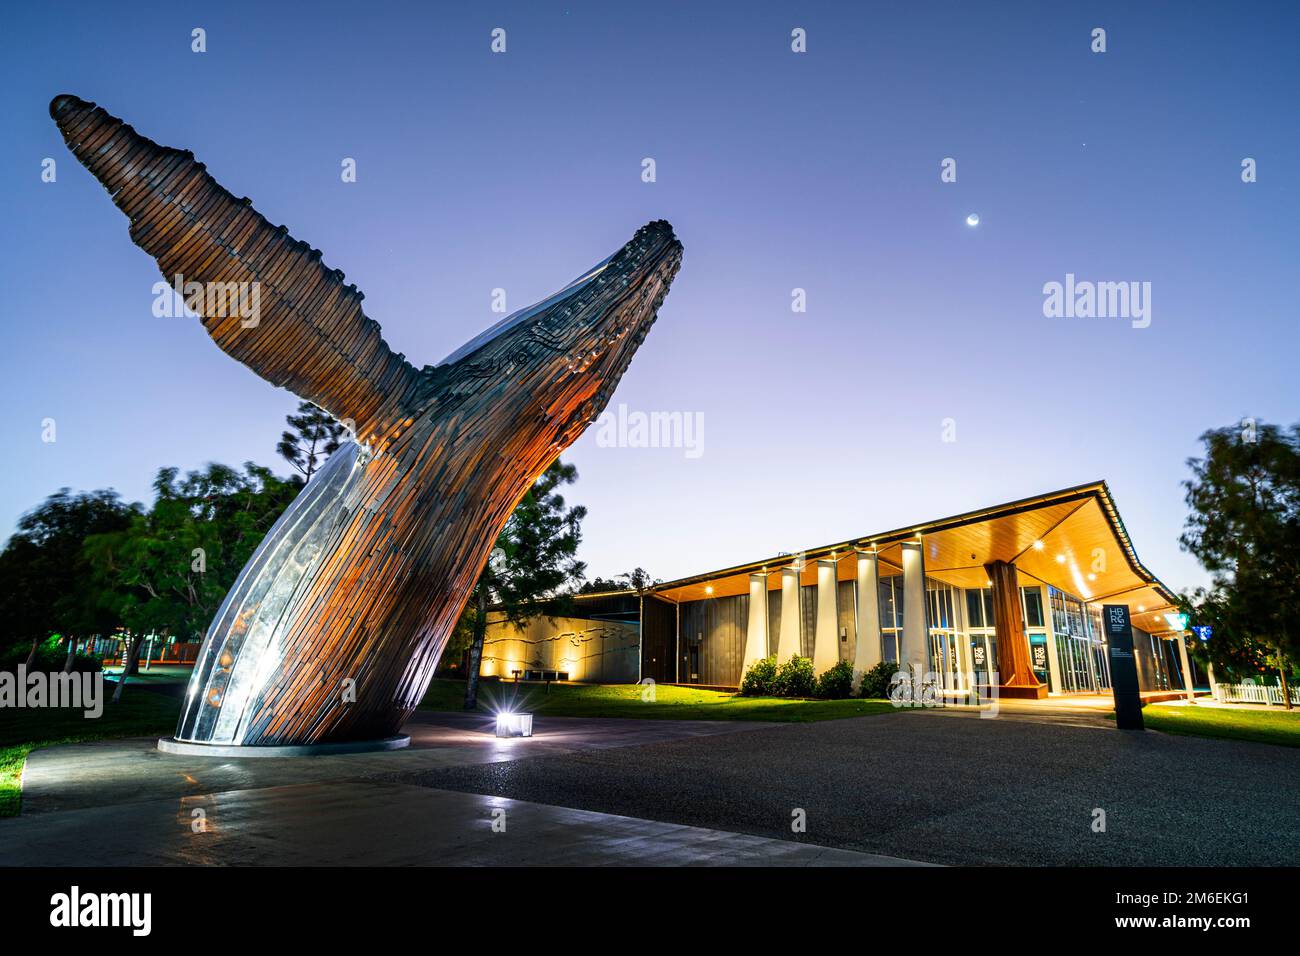 Escultura de Nala la ballena jorobada iluminada por la noche fuera de la Galería Regional de la Costa Fraser. Hervey Bay Qld Australia Foto de stock